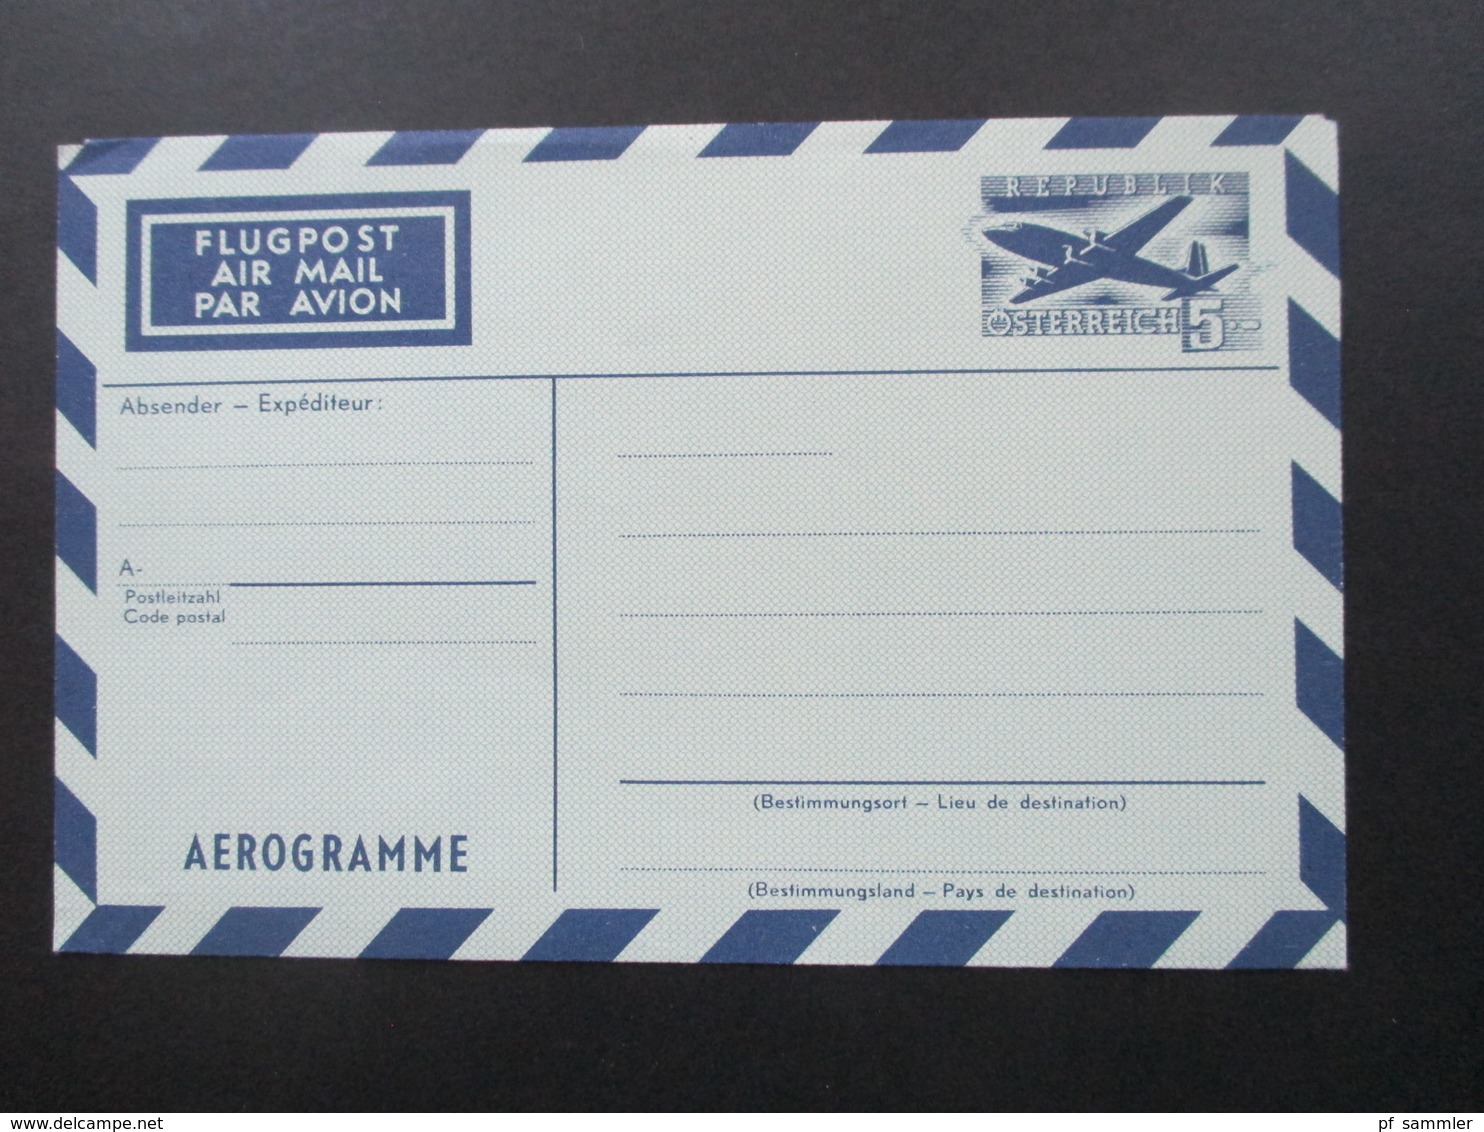 Österreich 1950 / 60er Jahre Aerogramm 7 Stück teilweise IFA und WIPA Zudrucke! 6x ungebraucht und 1x FDC Einschreiben